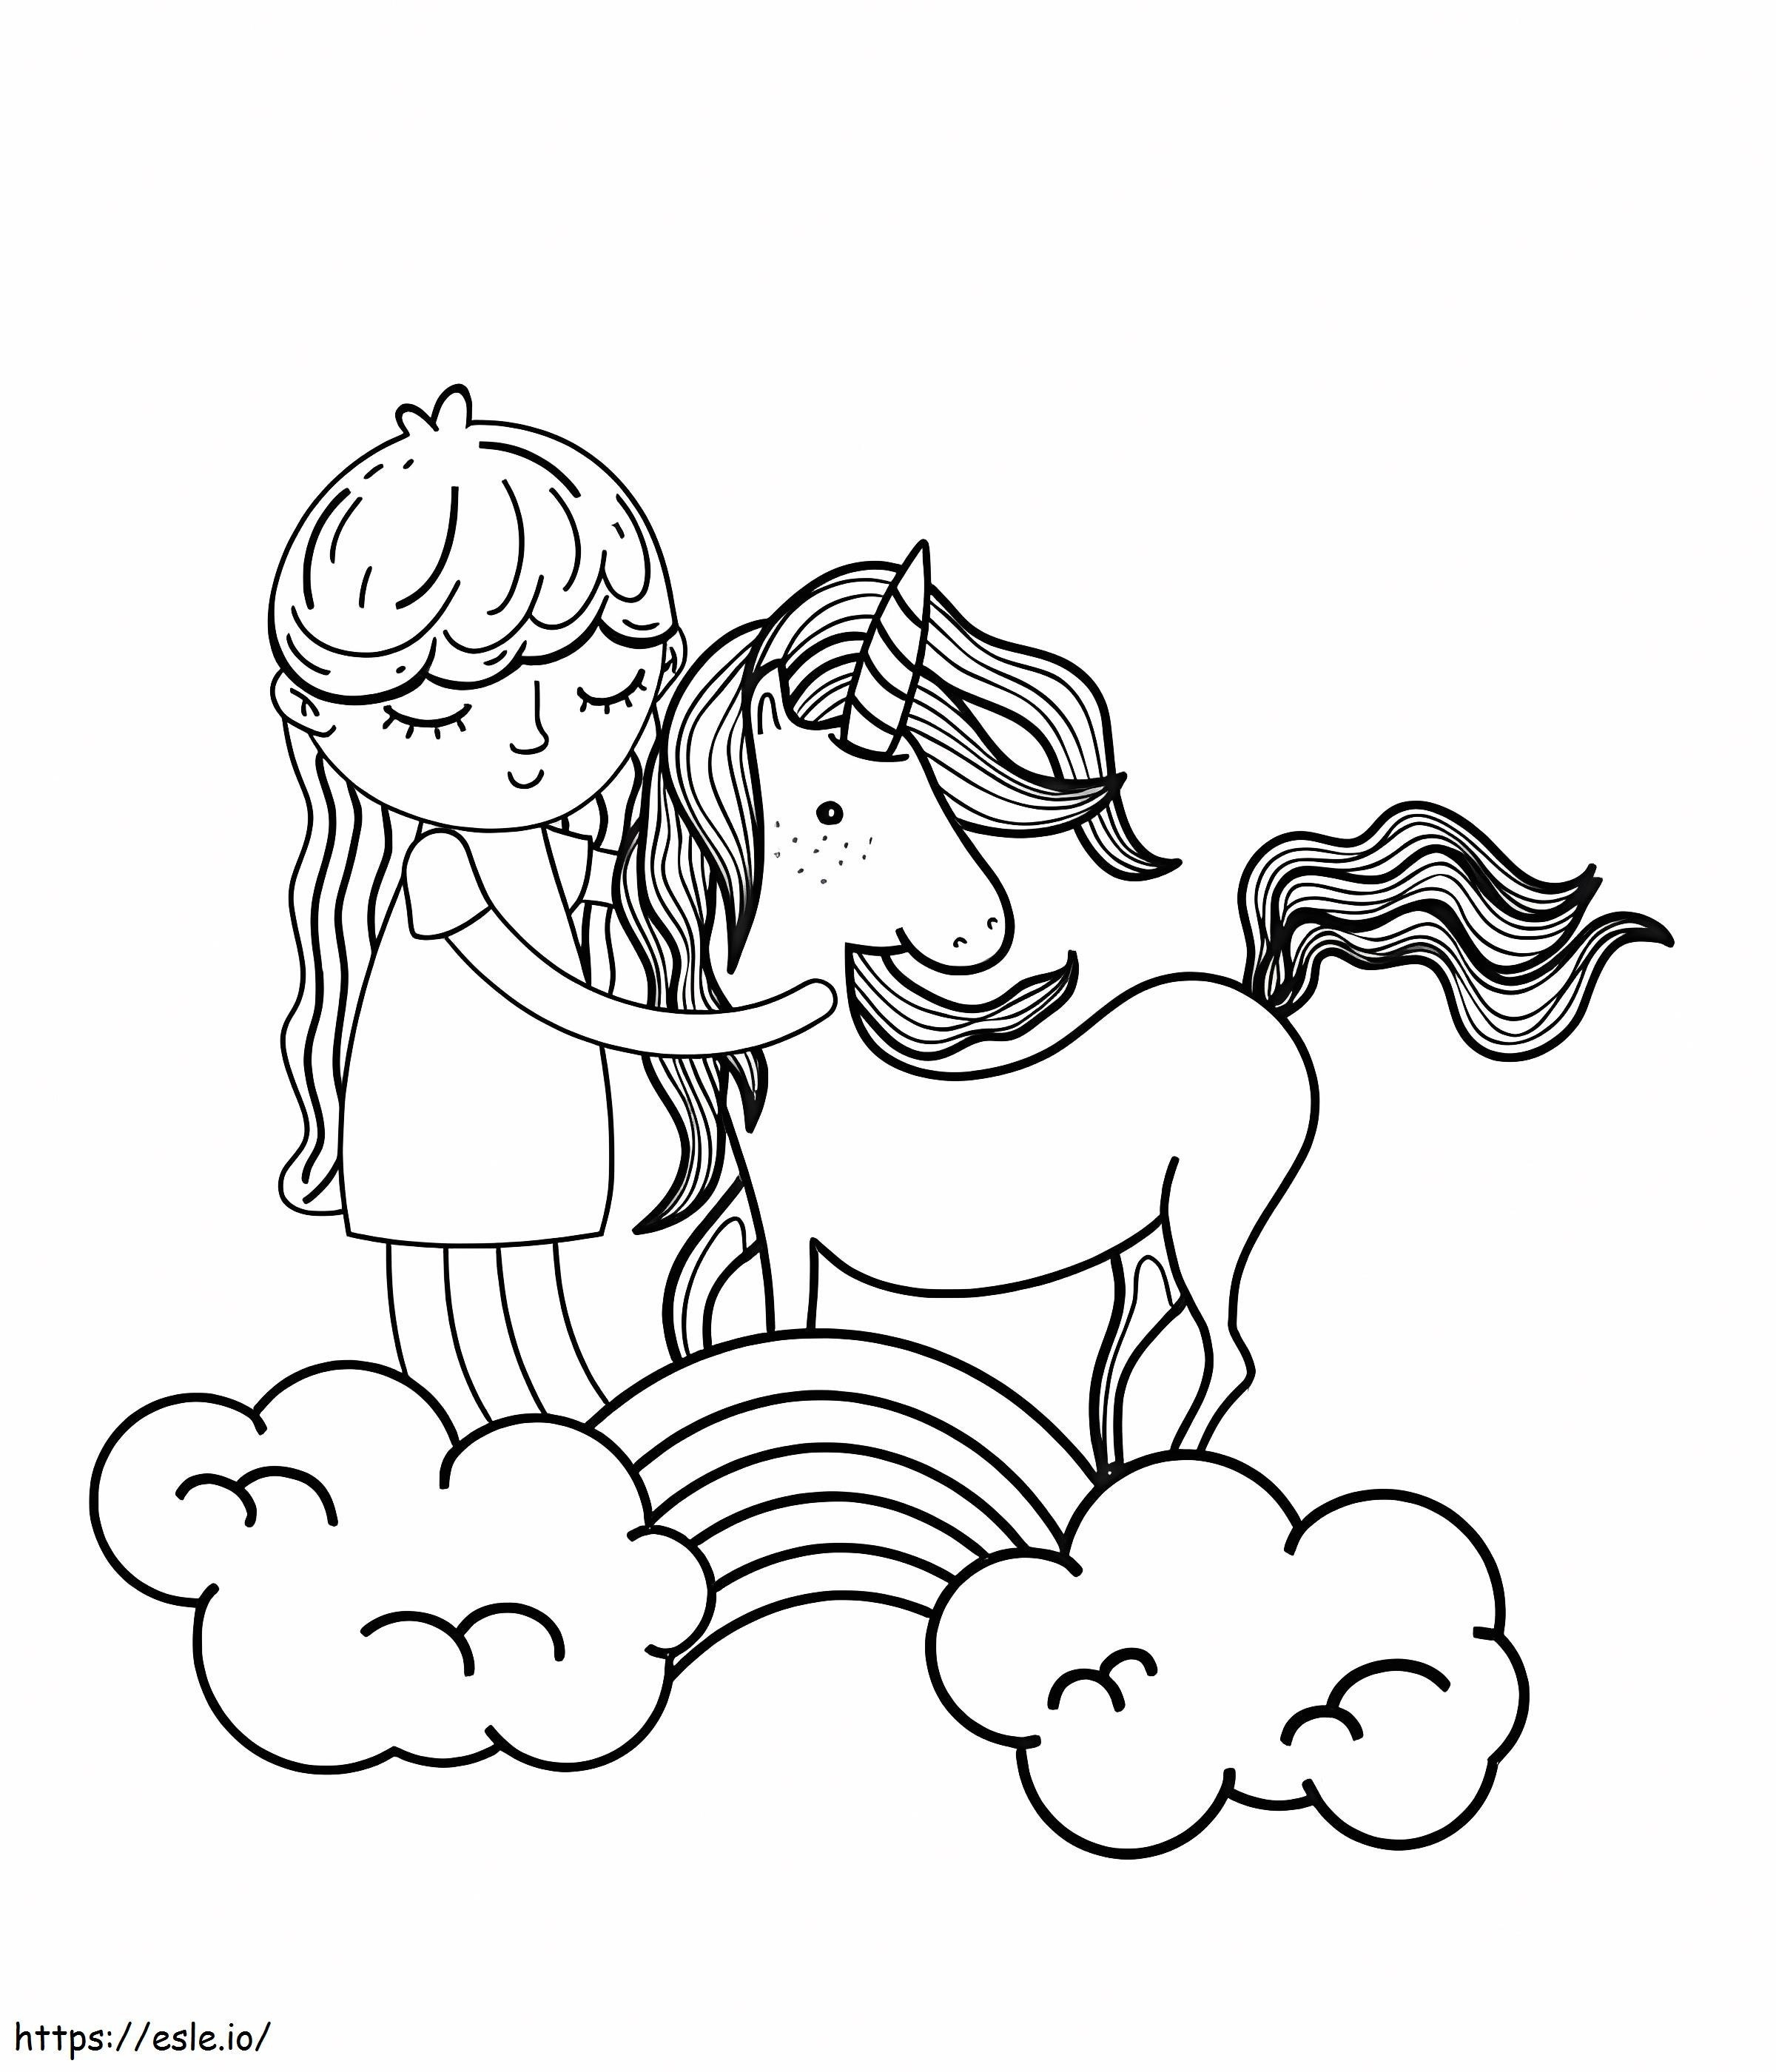 Gökkuşağı üzerinde tek boynuzlu at olan kız boyama